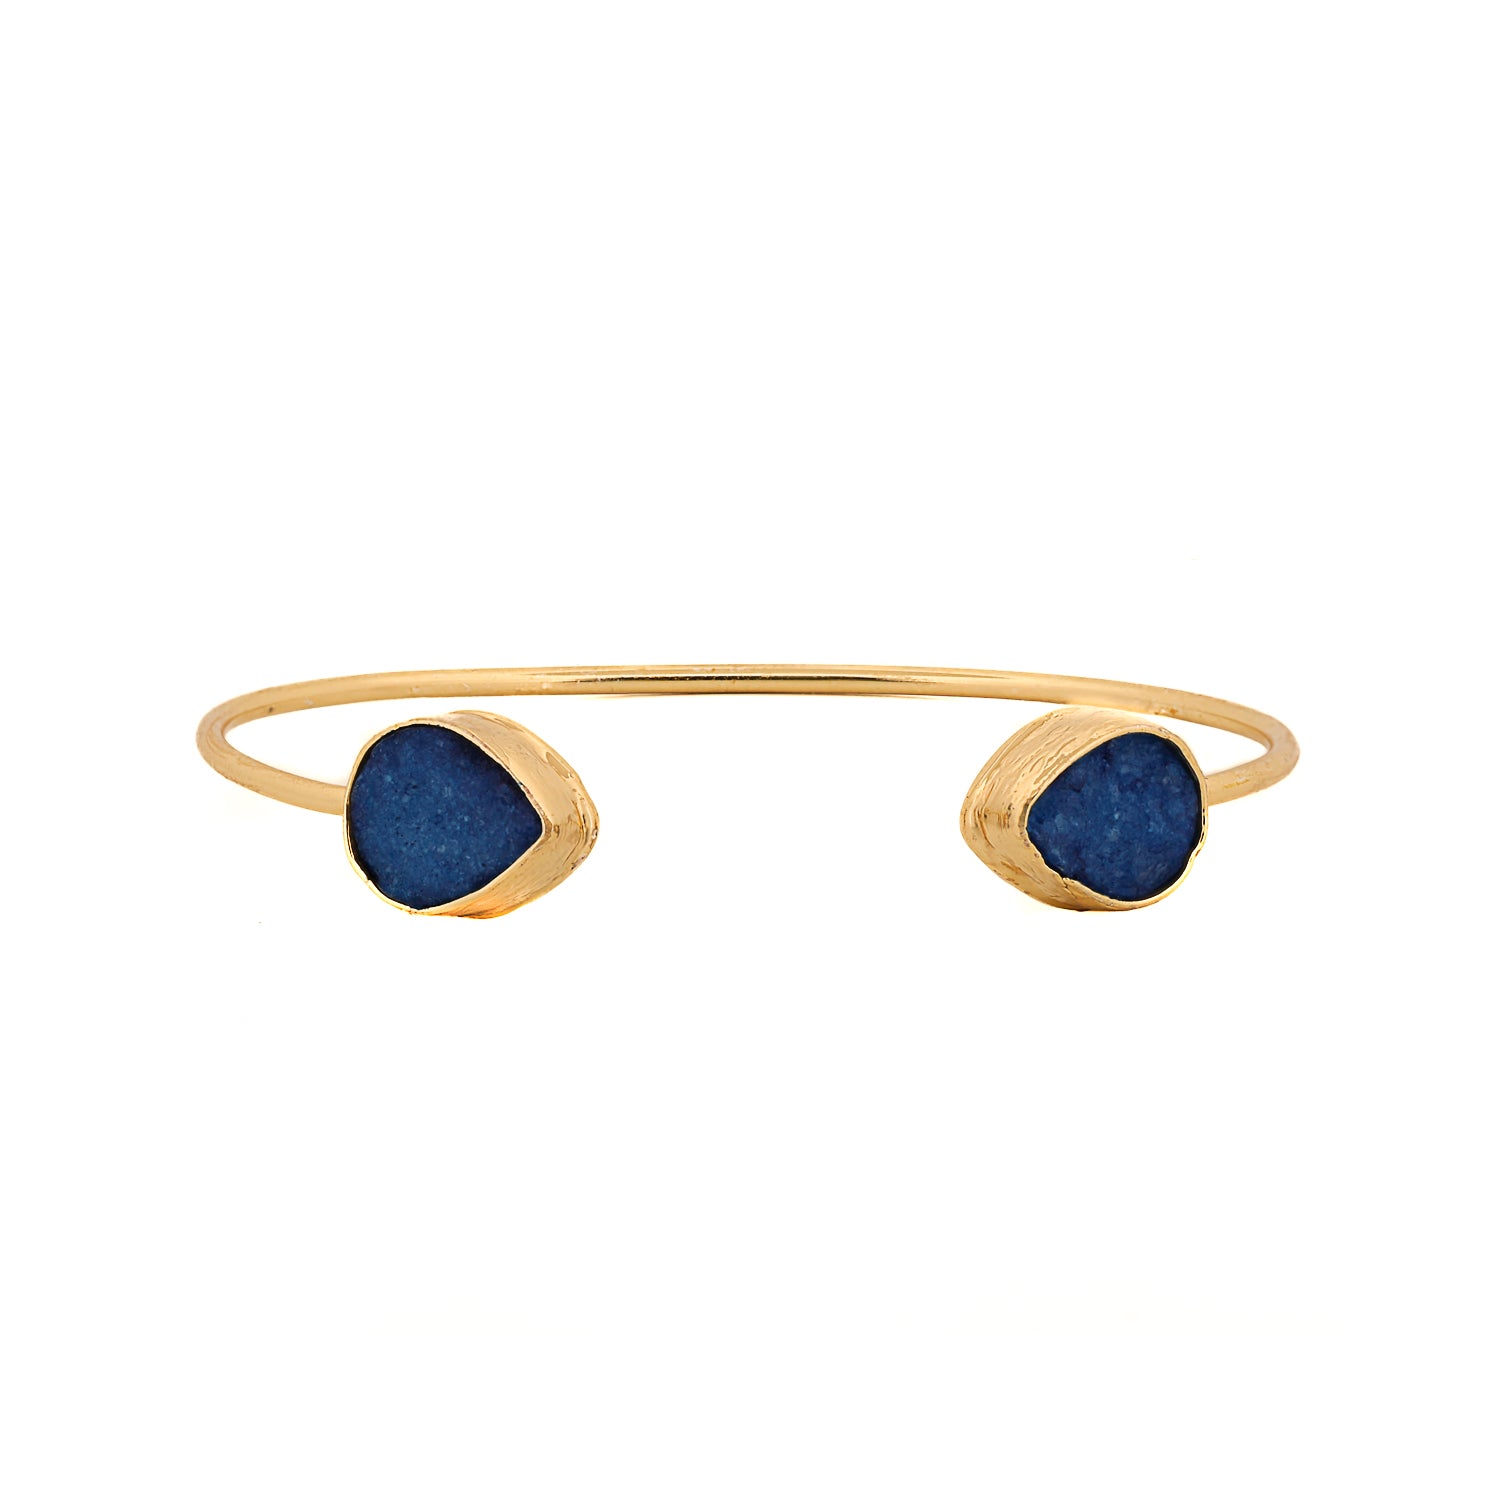 Cleopatra Blue Druzy Agate Gold Cuff Bracelet